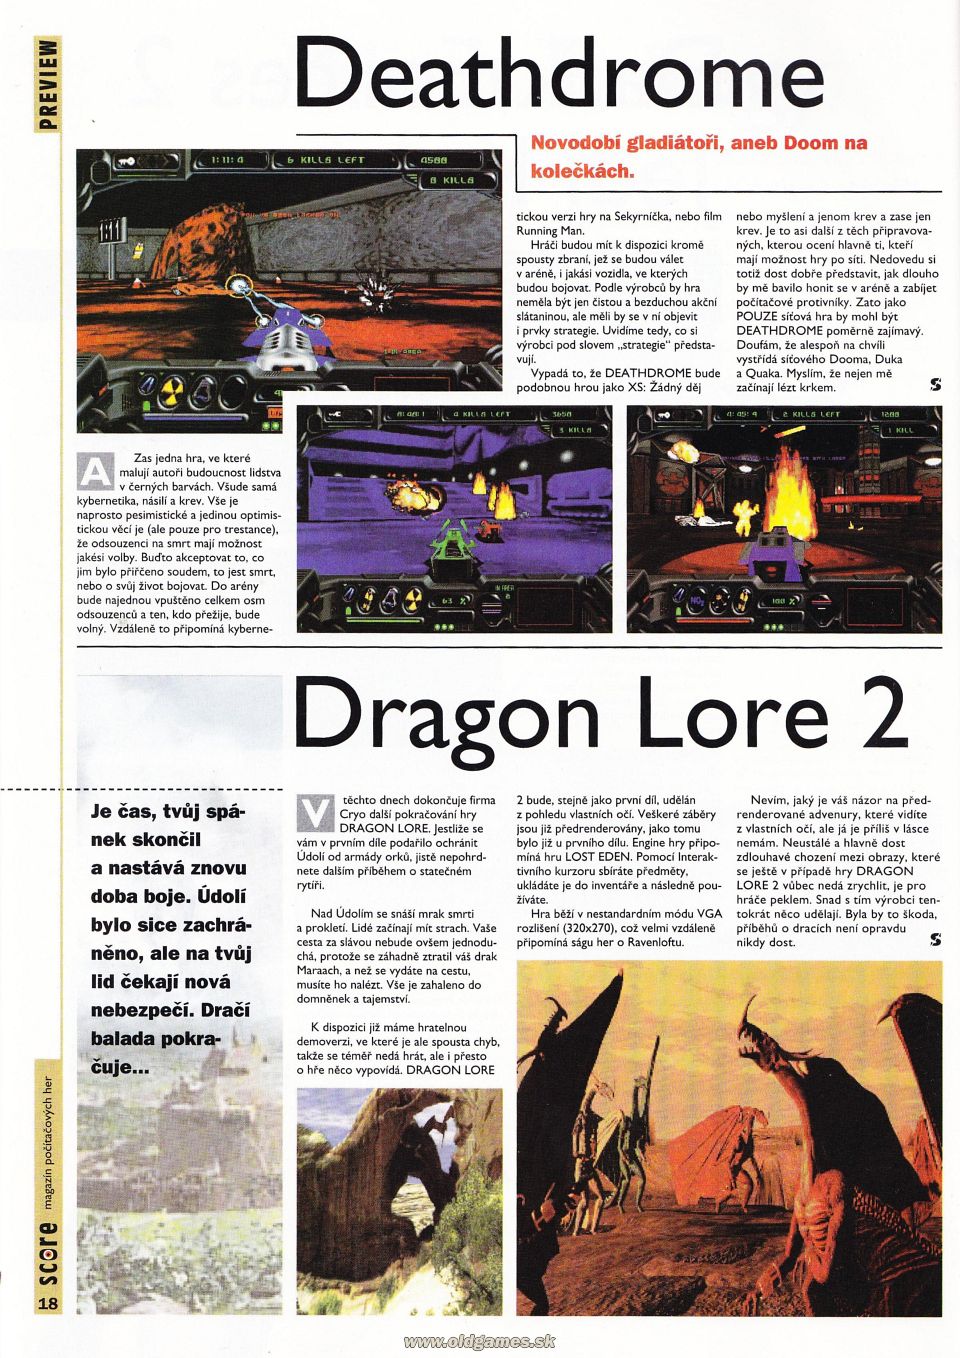 Preview: Deathdrome, Dragon Lore 2